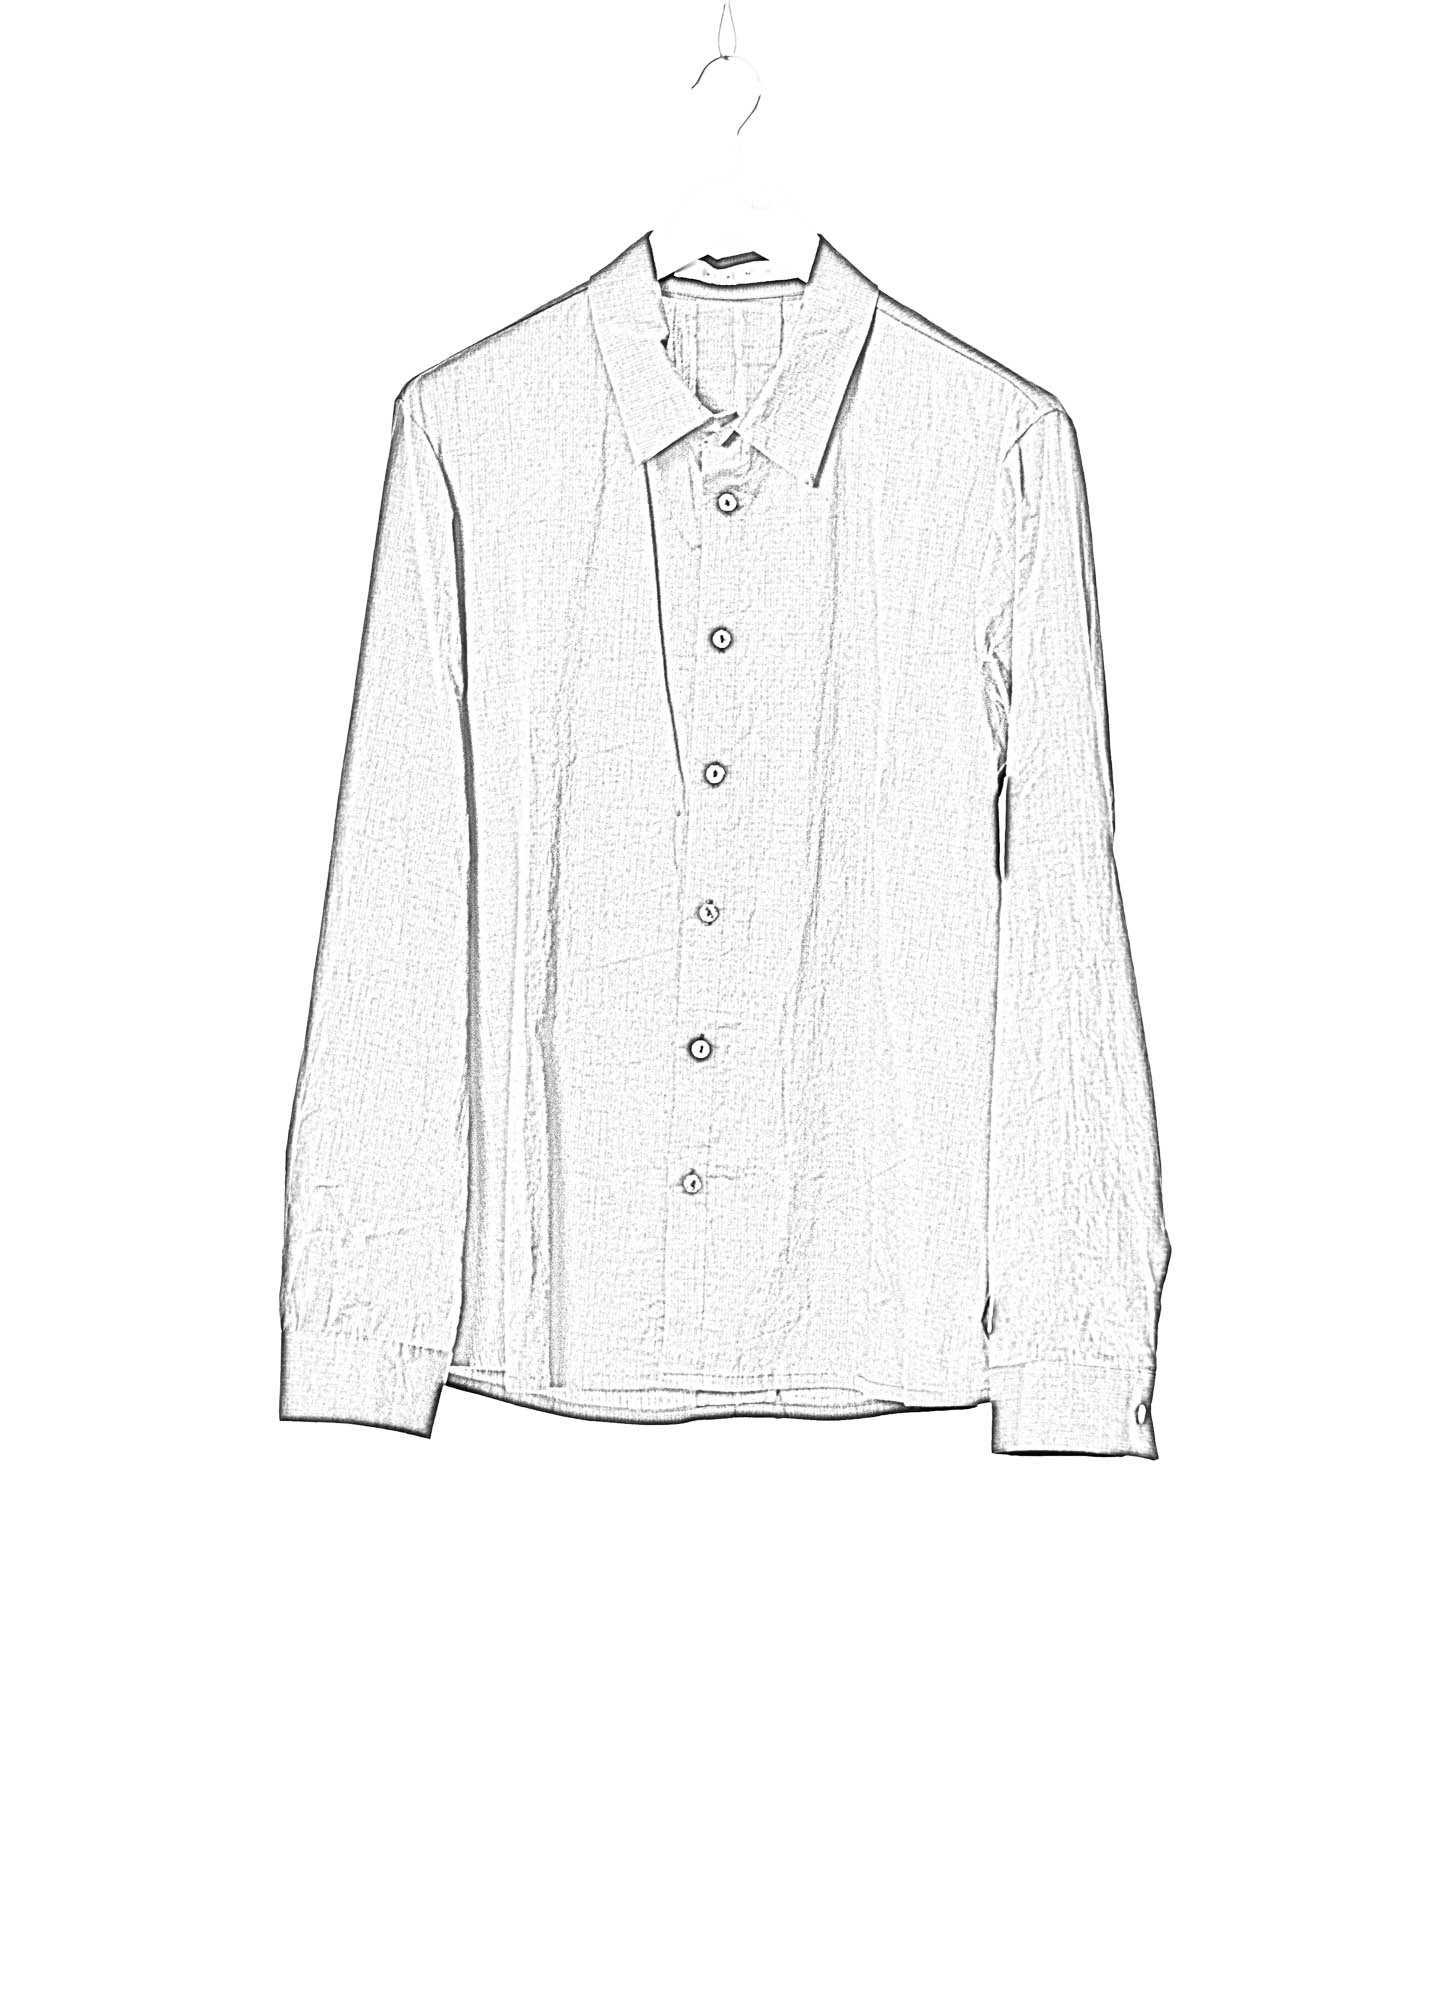 KANG MSHR 005 LY DEPCHEC Men Back Split Relaxed Fit Shirt Herren Hemd cotton silk dark grey hide m 2